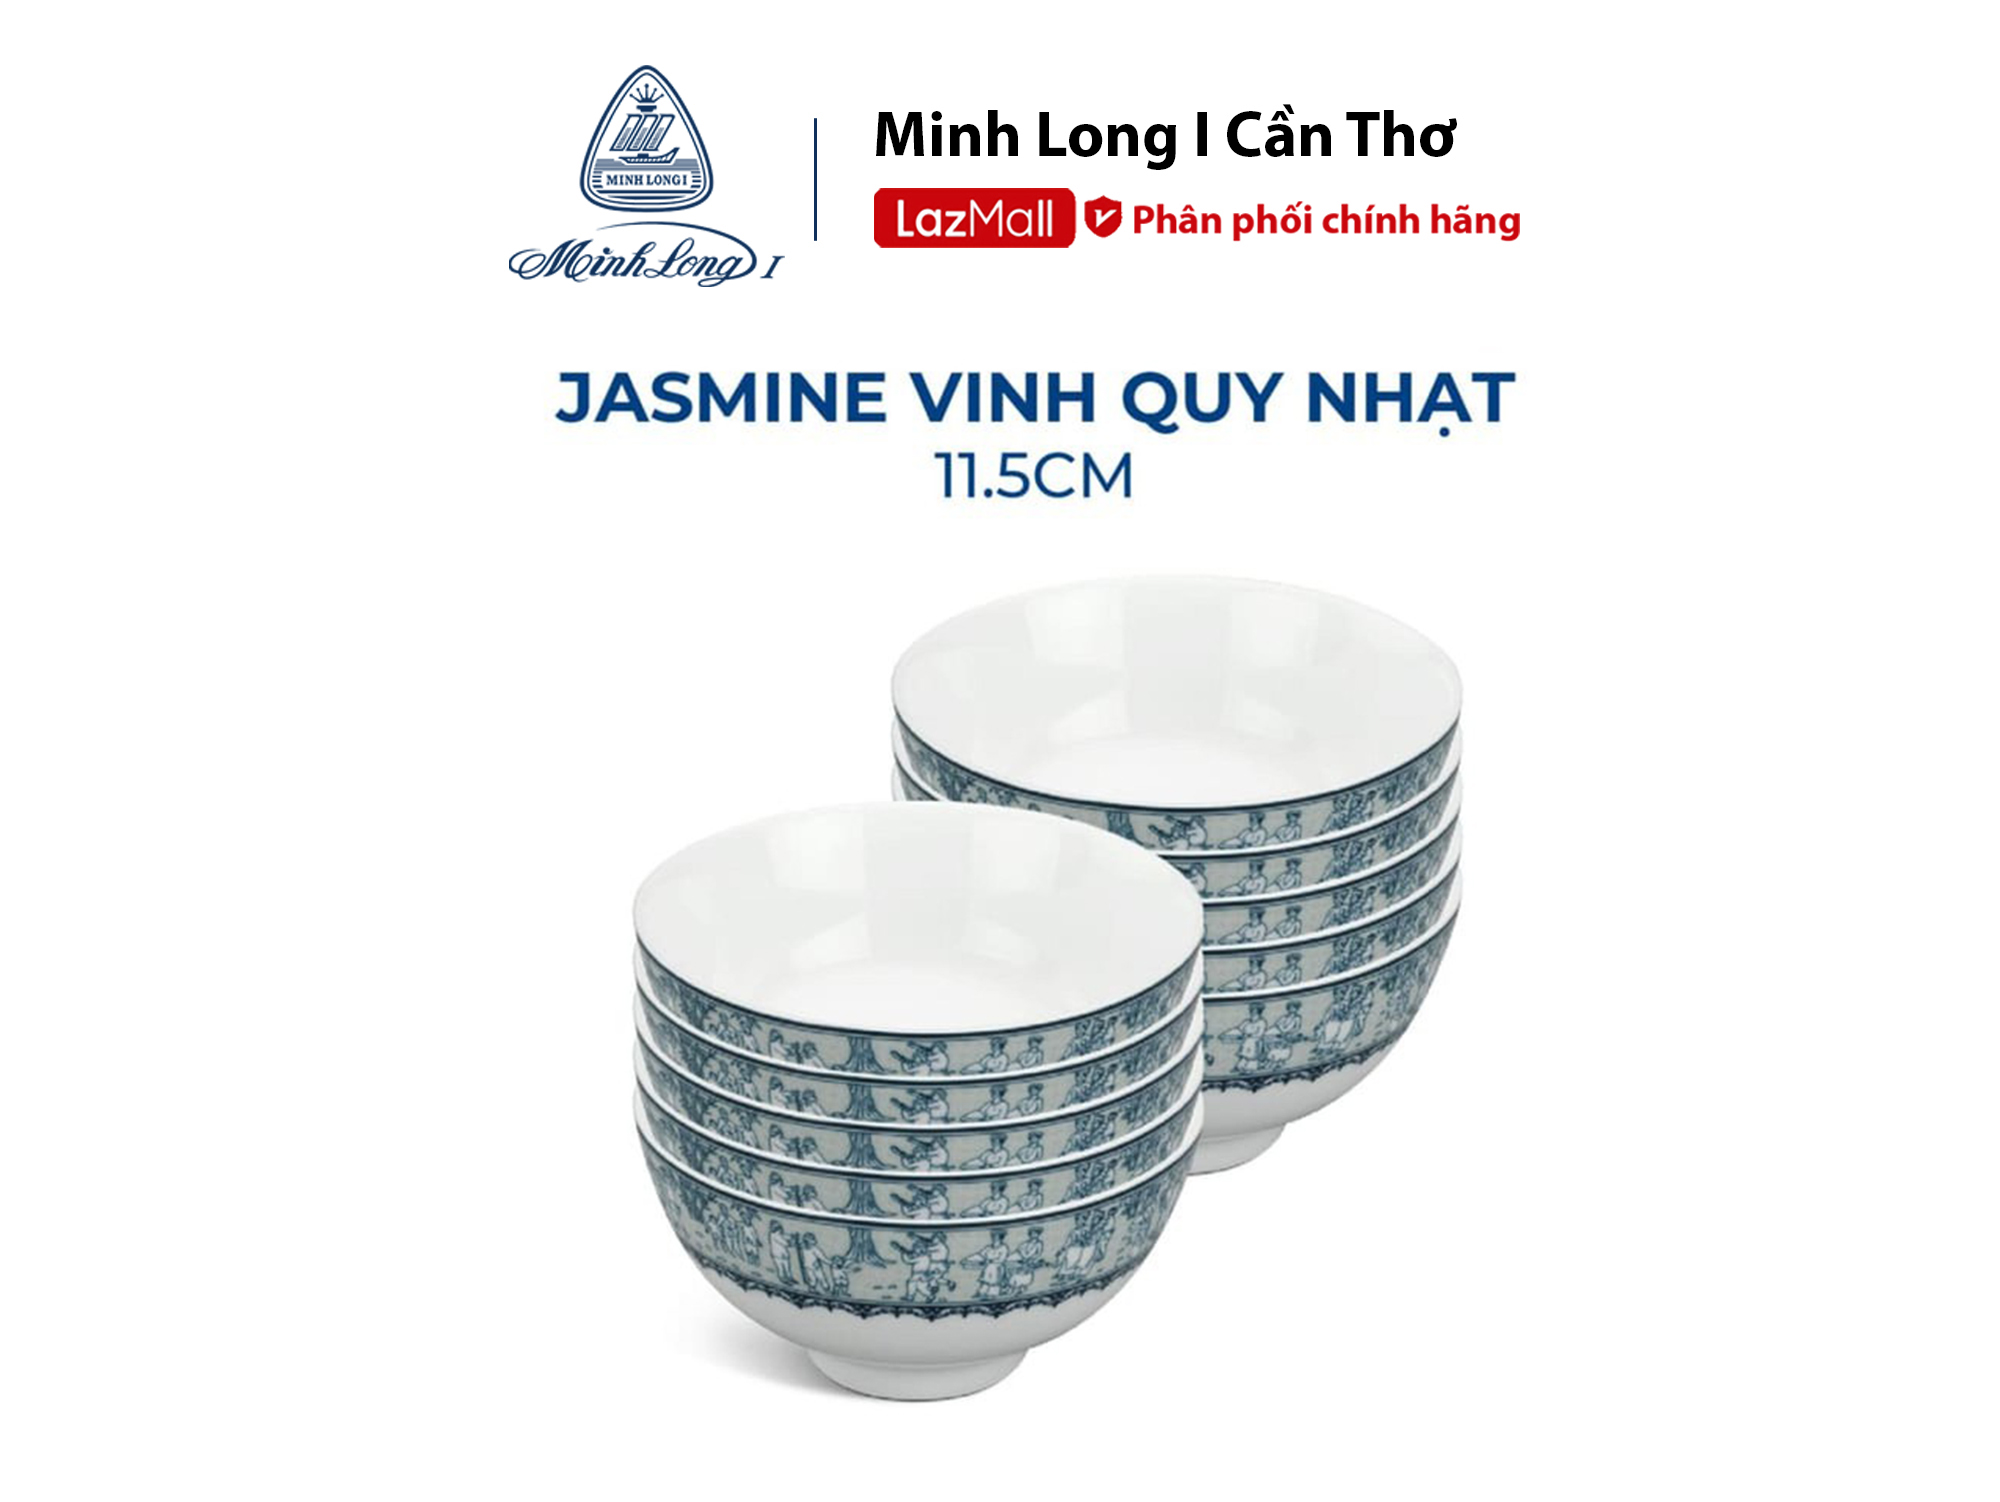 Bộ 10 Chén Cơm sứ cao cấp Minh Long 11.5cm Jasmine Vinh Quy Nhạt dùng ăn cơm trong gia đình đãi khách hay tặng quà tết